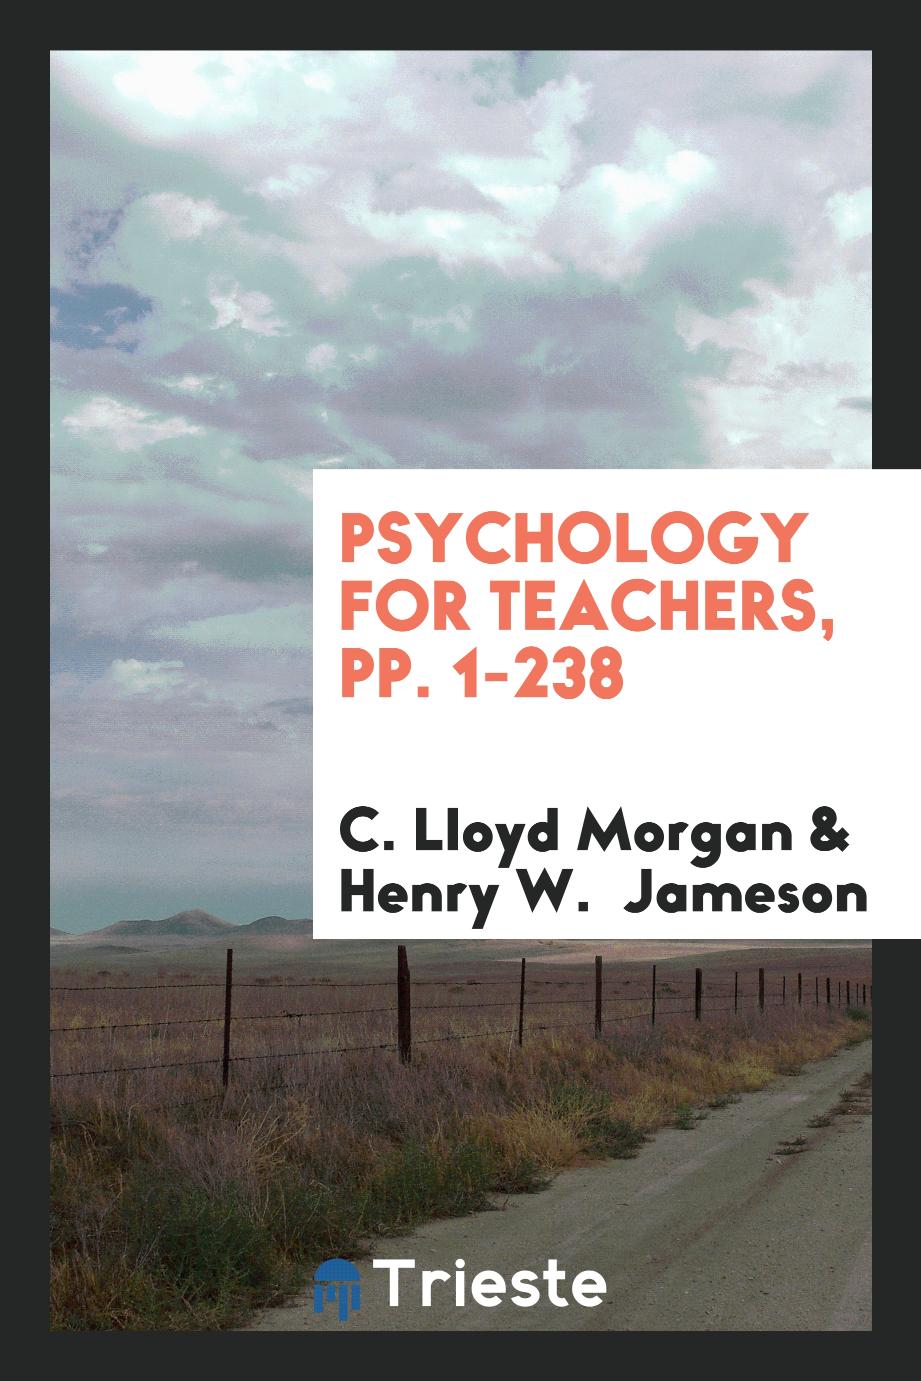 Psychology for Teachers, pp. 1-238